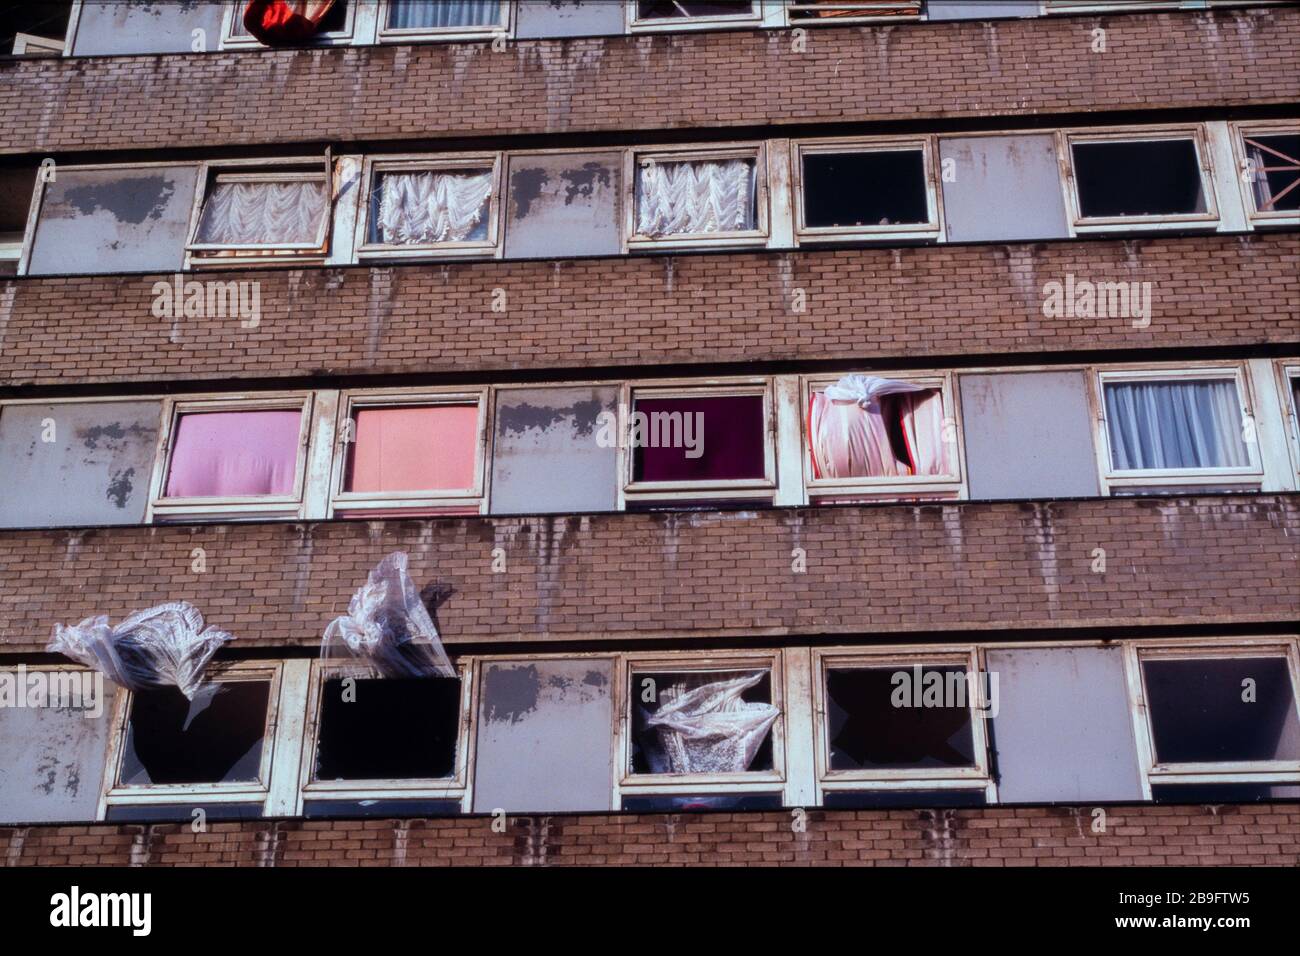 Des logements publics endommagés après l'attentat à la bombe des Docklands de Londres du 9 février 1996, lorsque l'IRA a détoné une bombe à camion à South Quay, tuant deux personnes et causant des dégâts de 150 millions de livres sterling. Banque D'Images